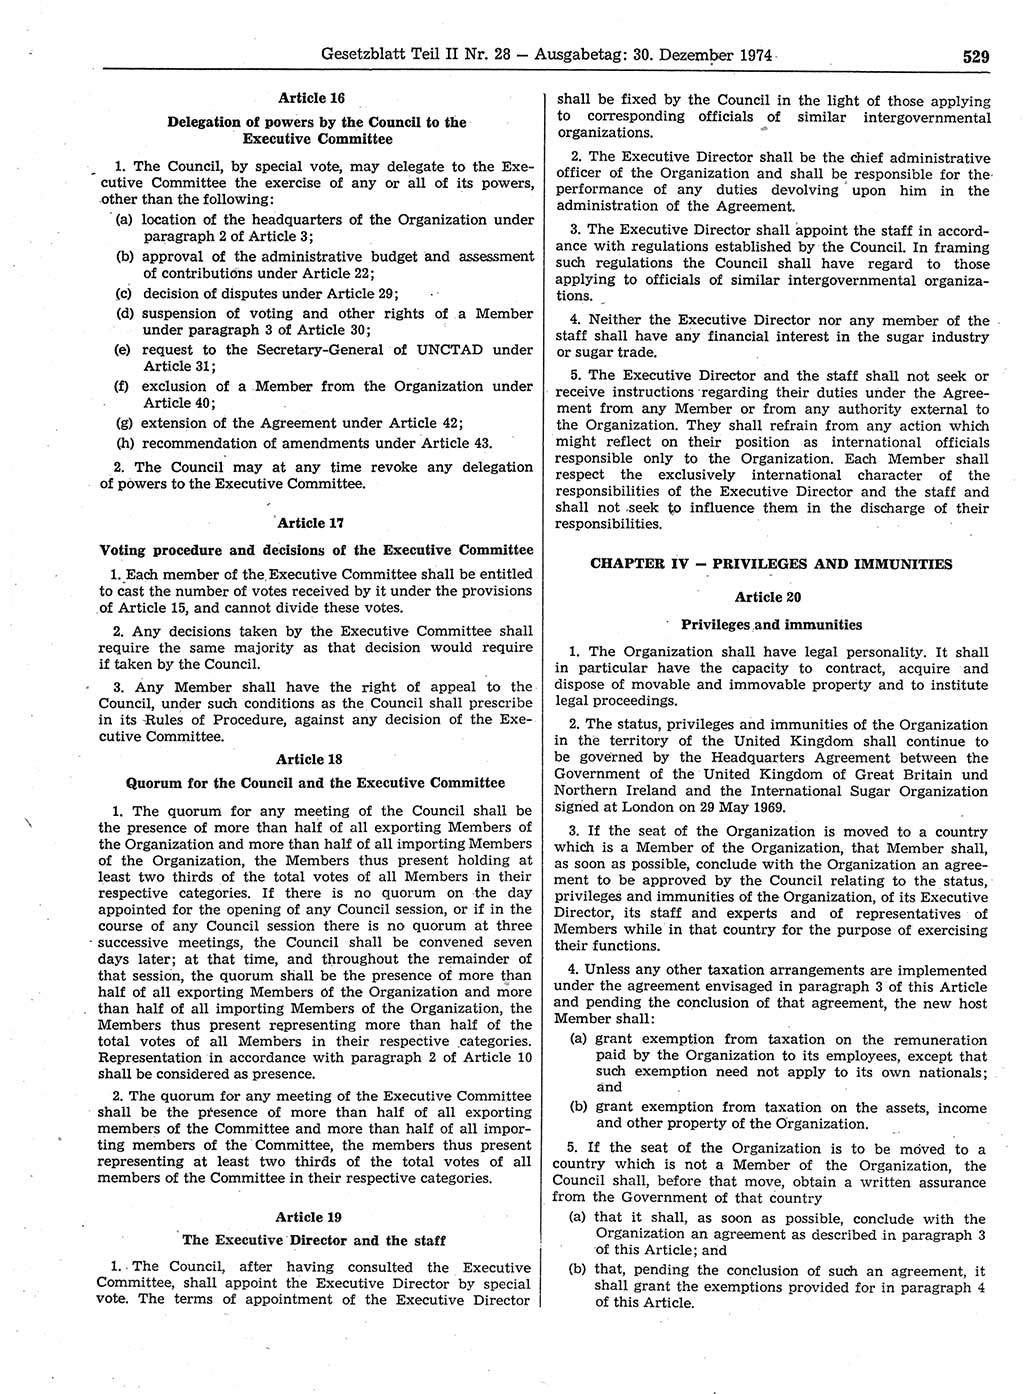 Gesetzblatt (GBl.) der Deutschen Demokratischen Republik (DDR) Teil ⅠⅠ 1974, Seite 529 (GBl. DDR ⅠⅠ 1974, S. 529)